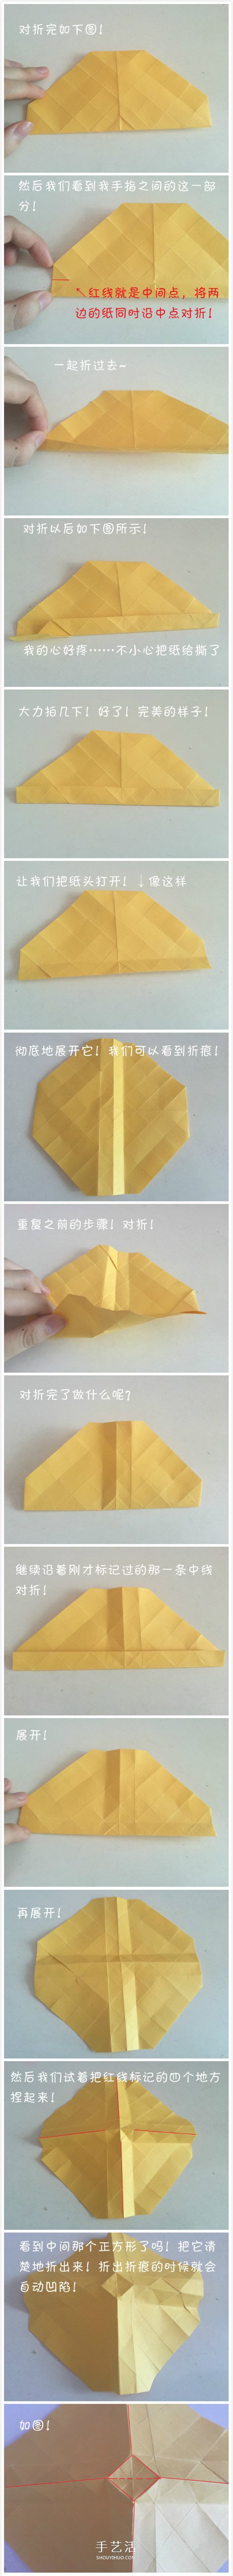 怎么折川崎玫瑰花图解 详细川崎玫瑰折纸过程